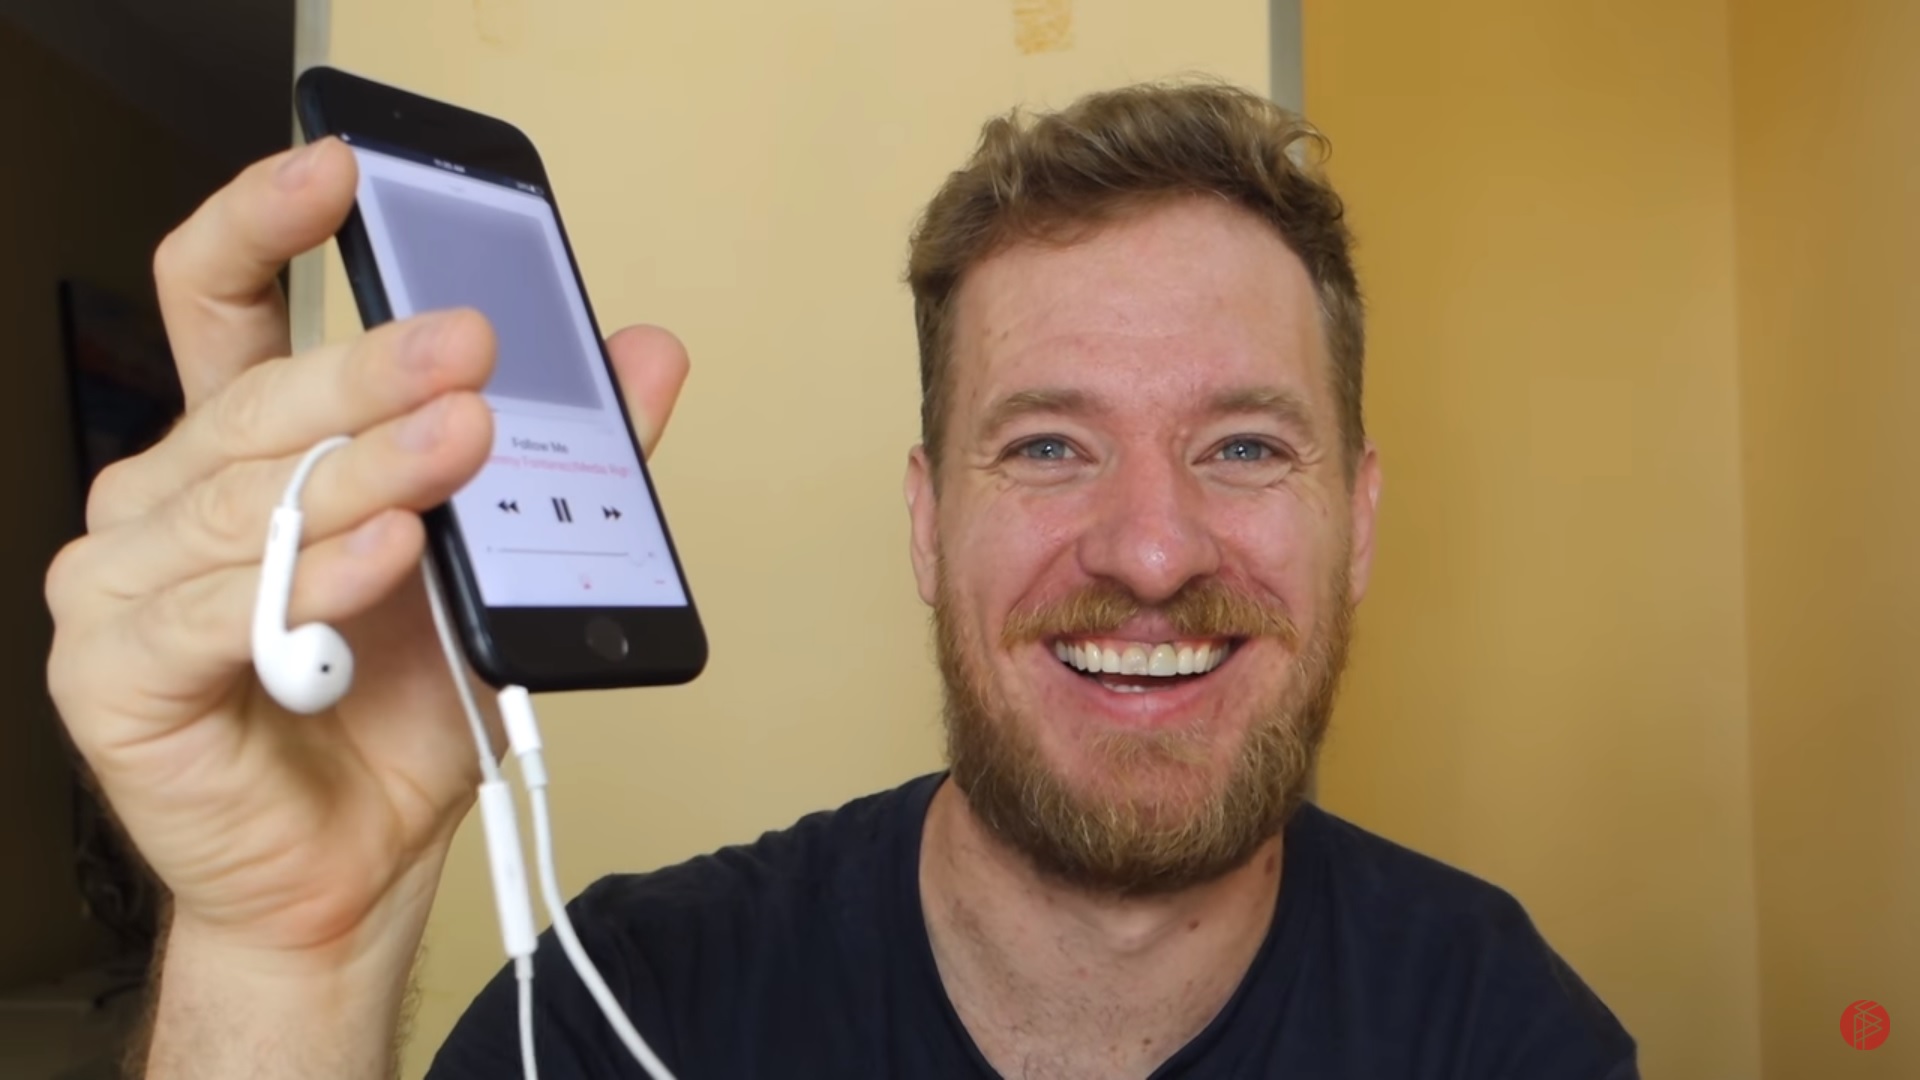 Scotty Allen lo hace nuevamente, ahora agregando un Jack 3.5mm para audífonos en un iPhone 7